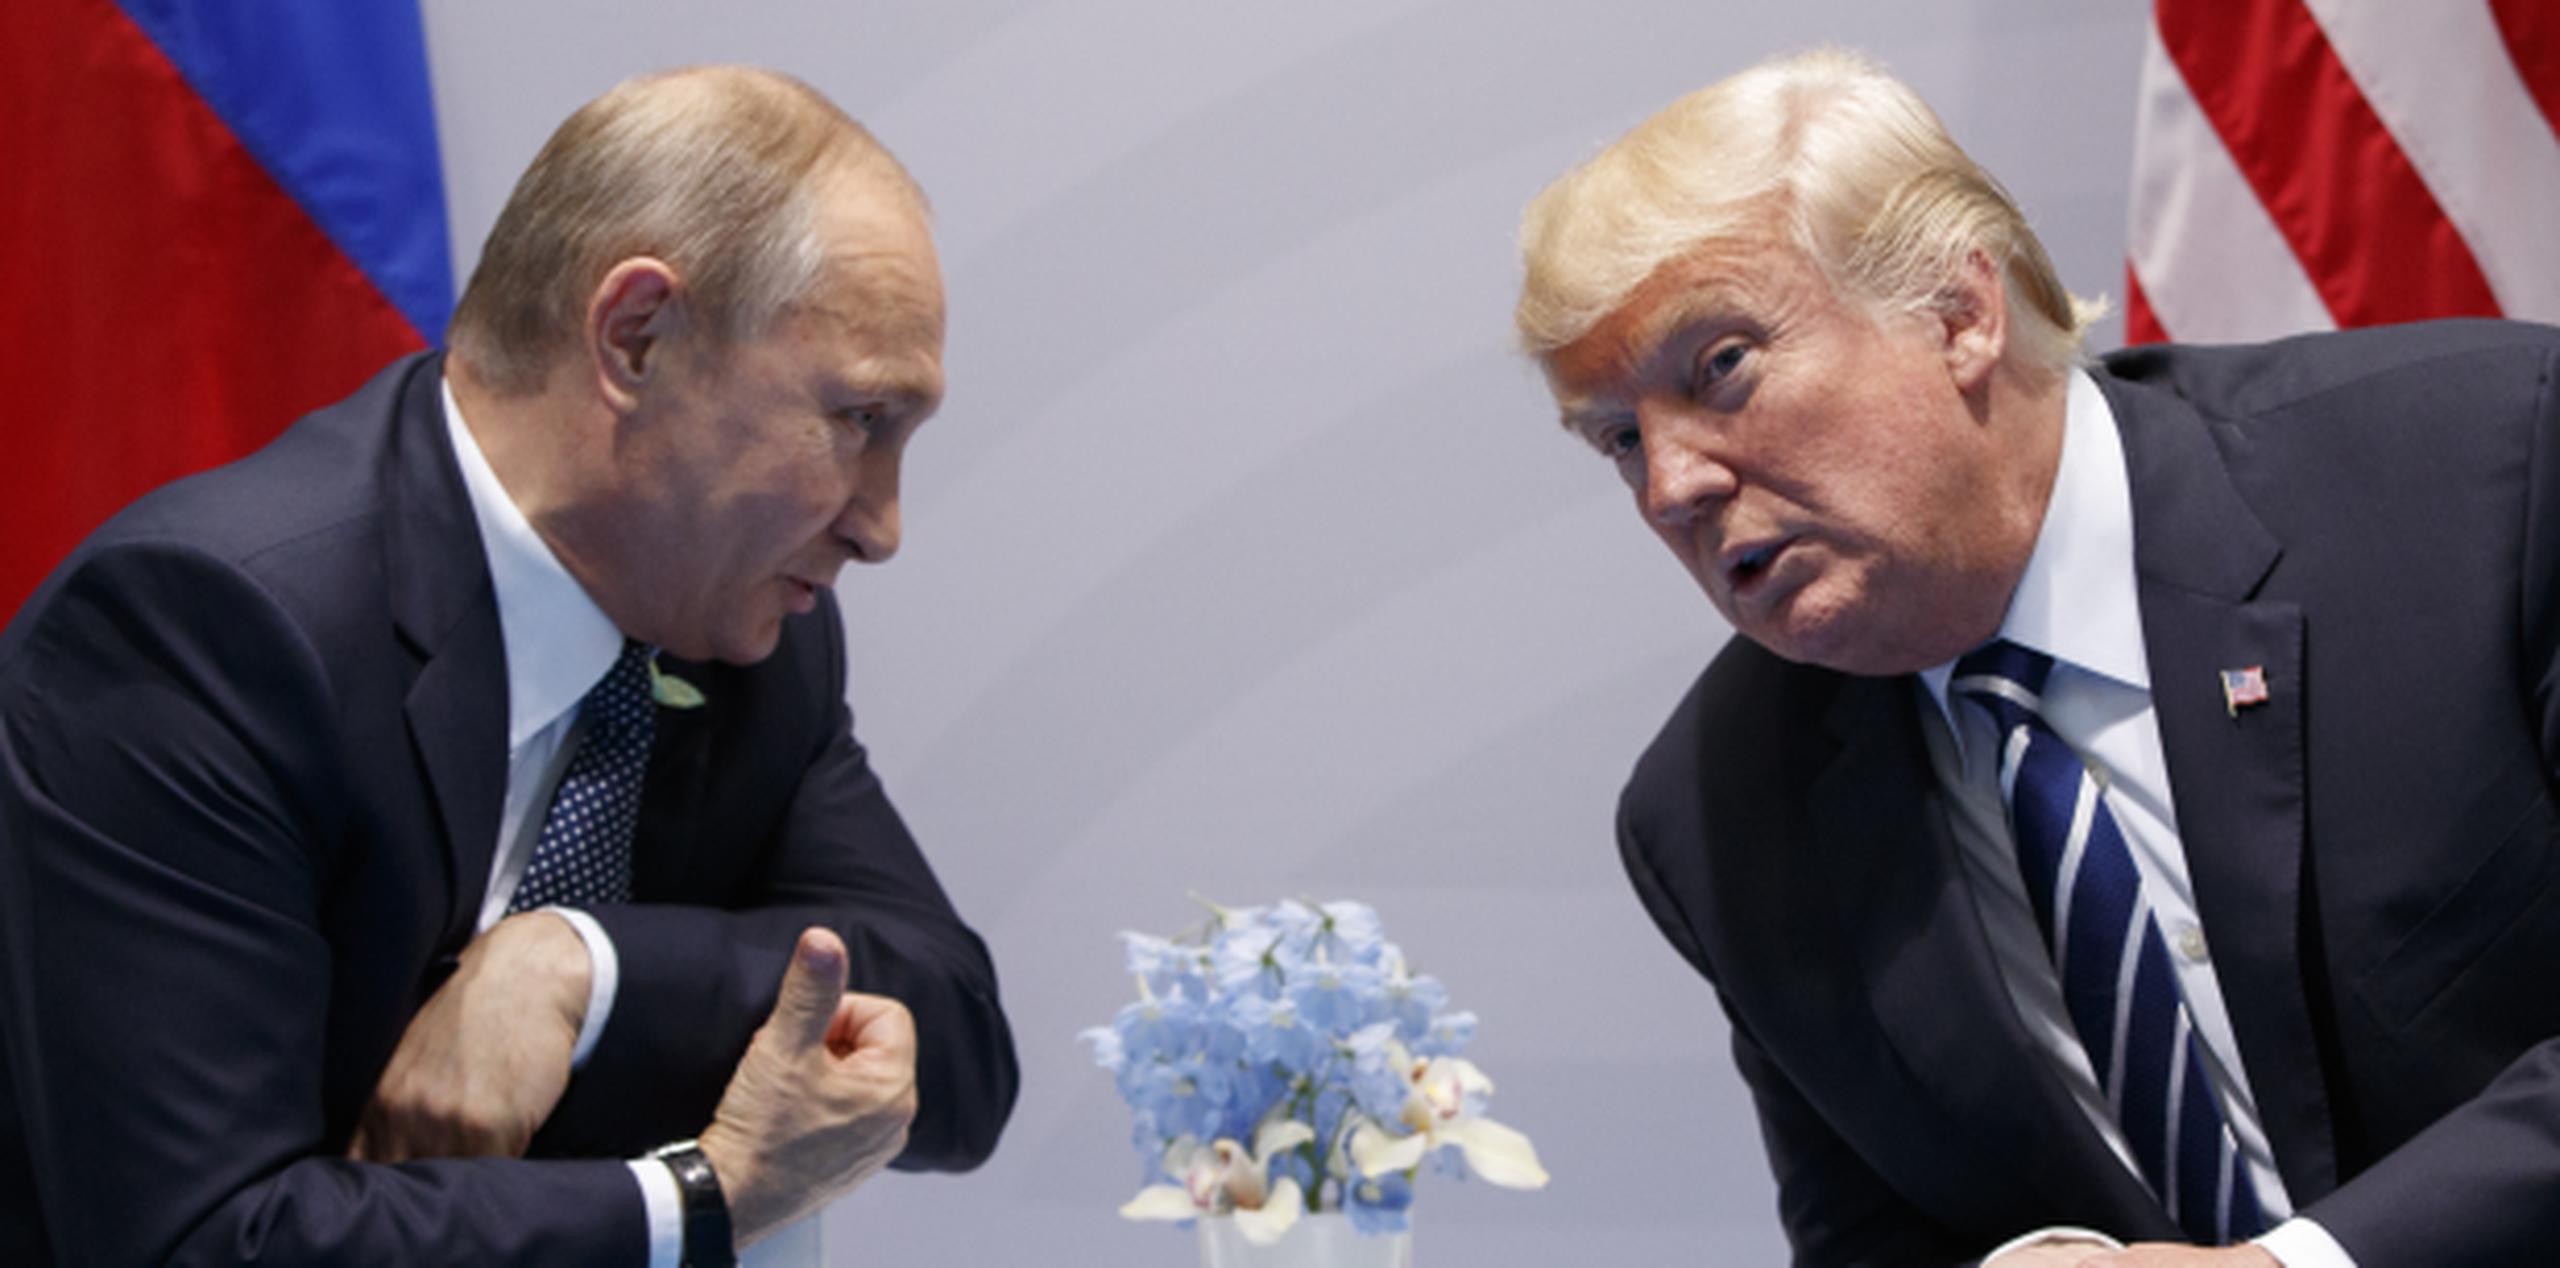 Vladimir Putin, presidente de Rusia, y Donald Trump, presidente de los Estados Unidos. (AP / Evan Vucci)